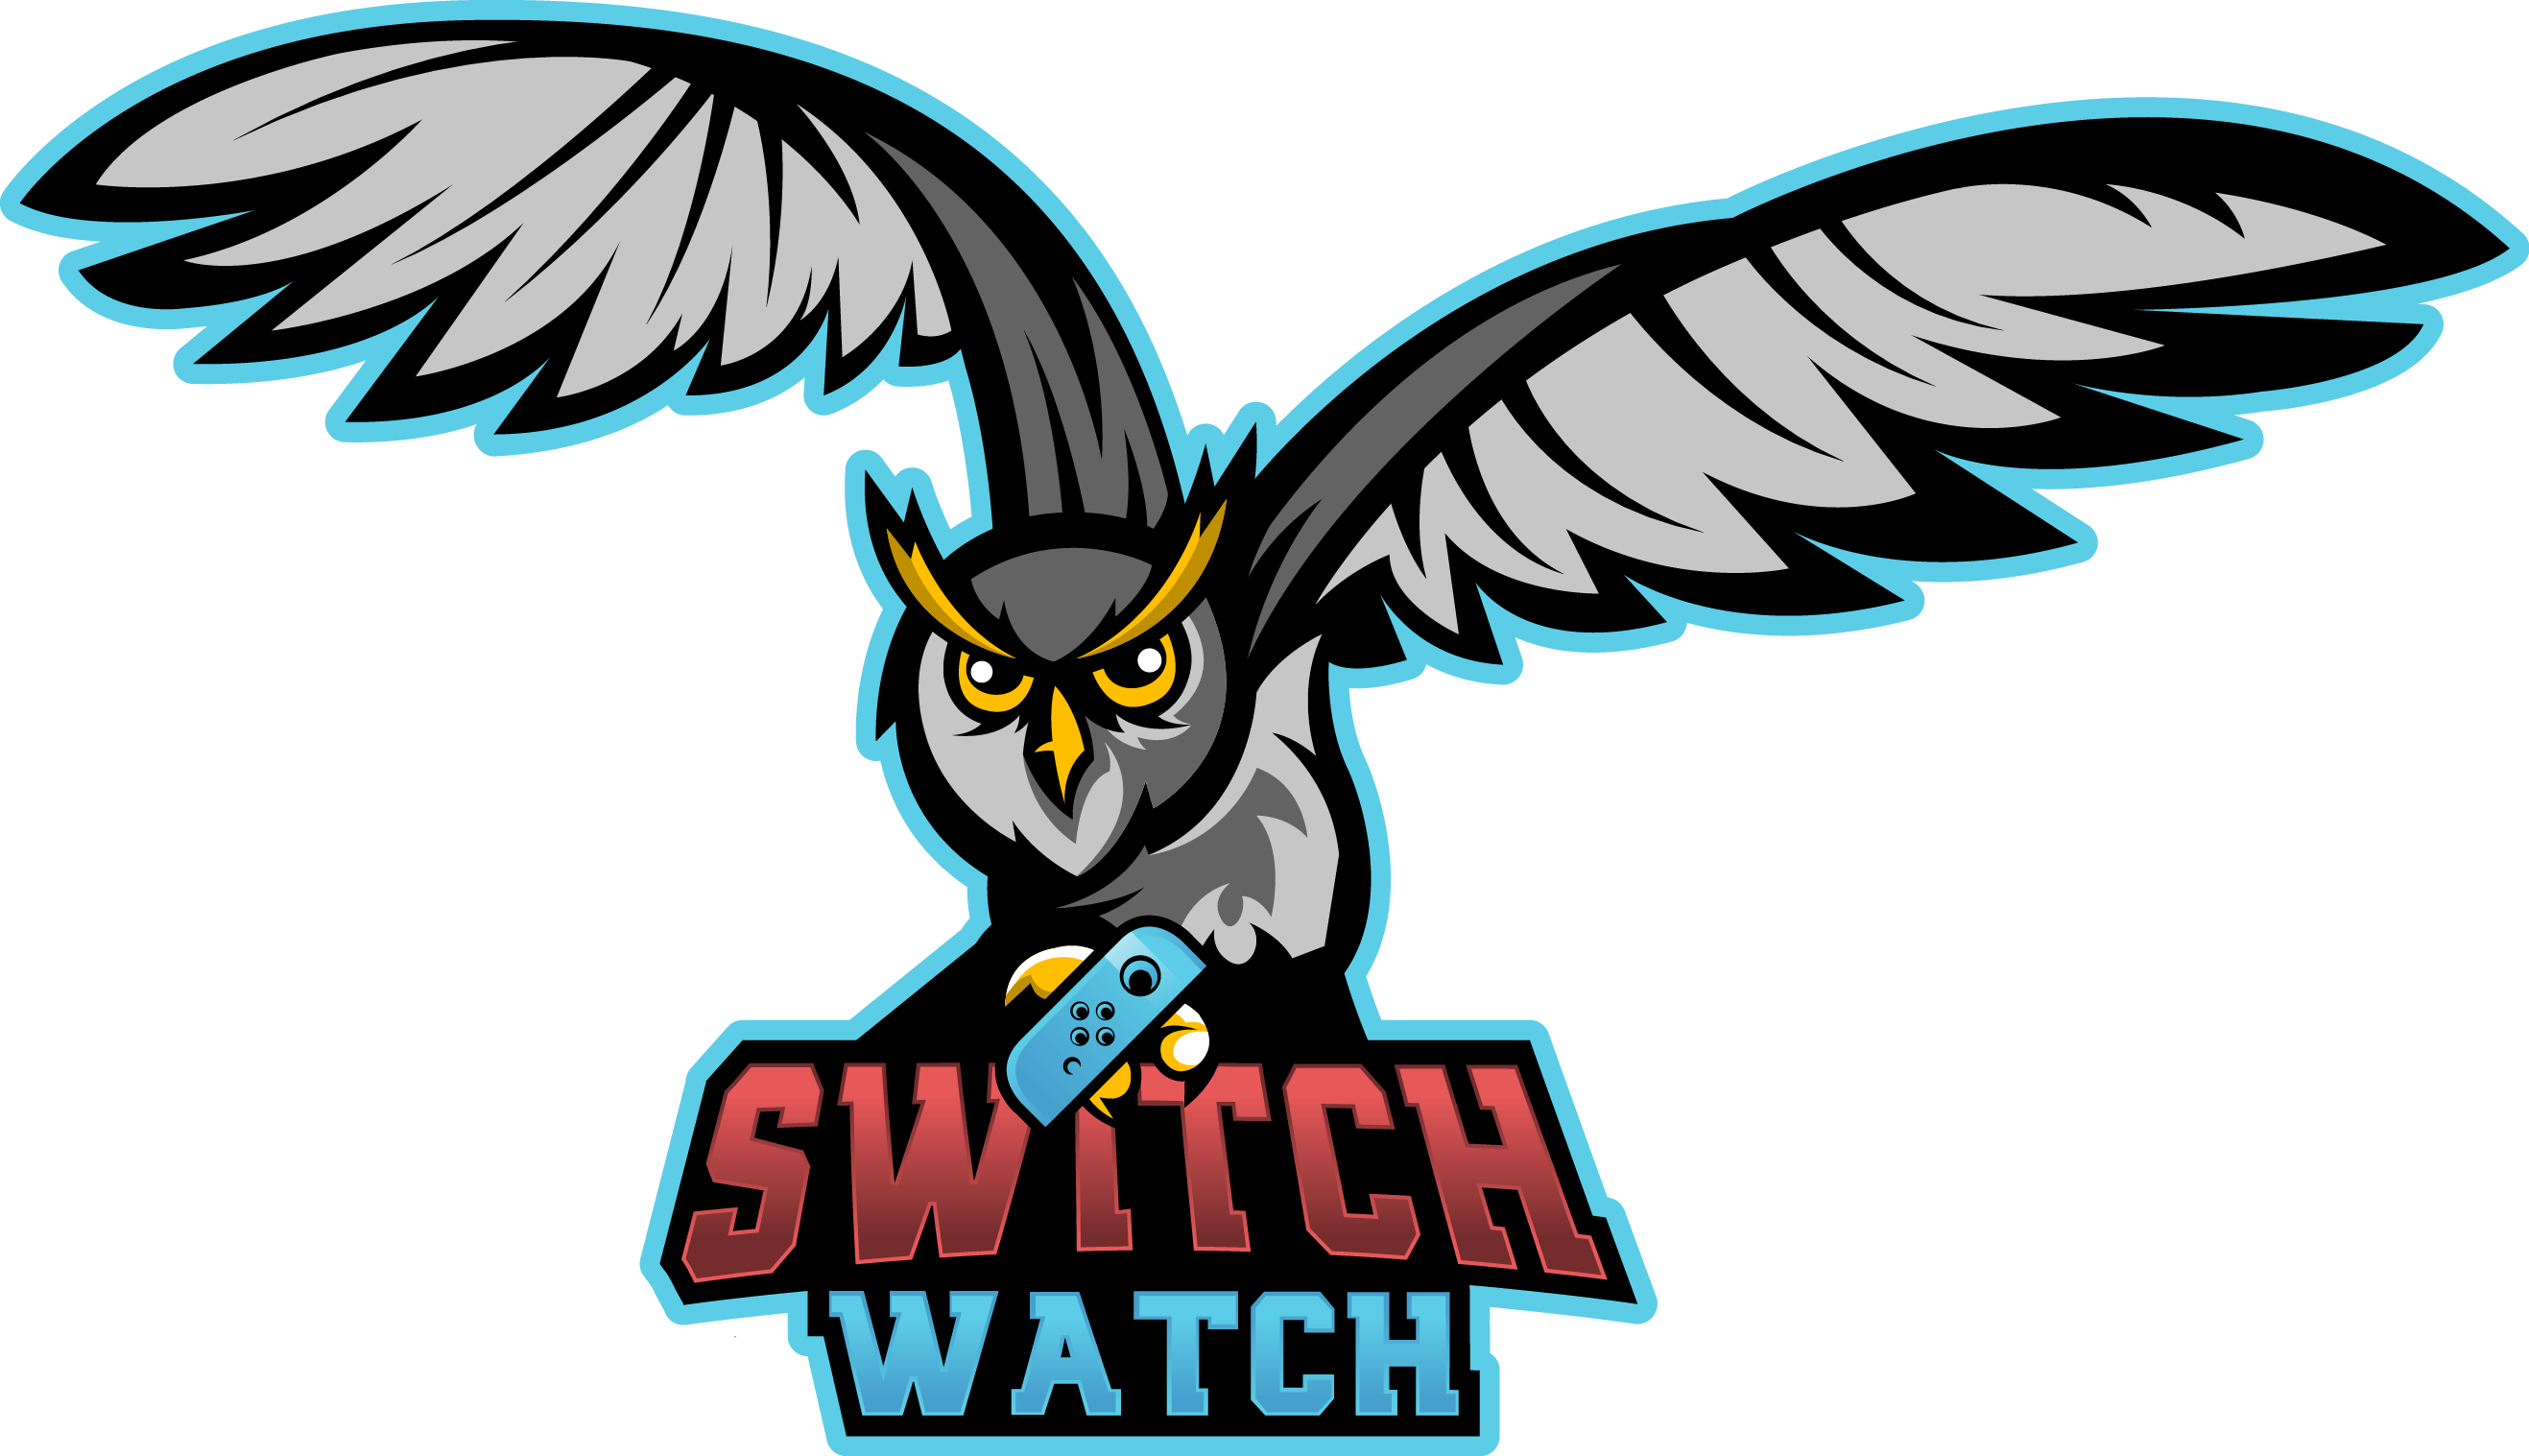 Switchwatch - Mario Kart 8 Deluxe (2635x1517)